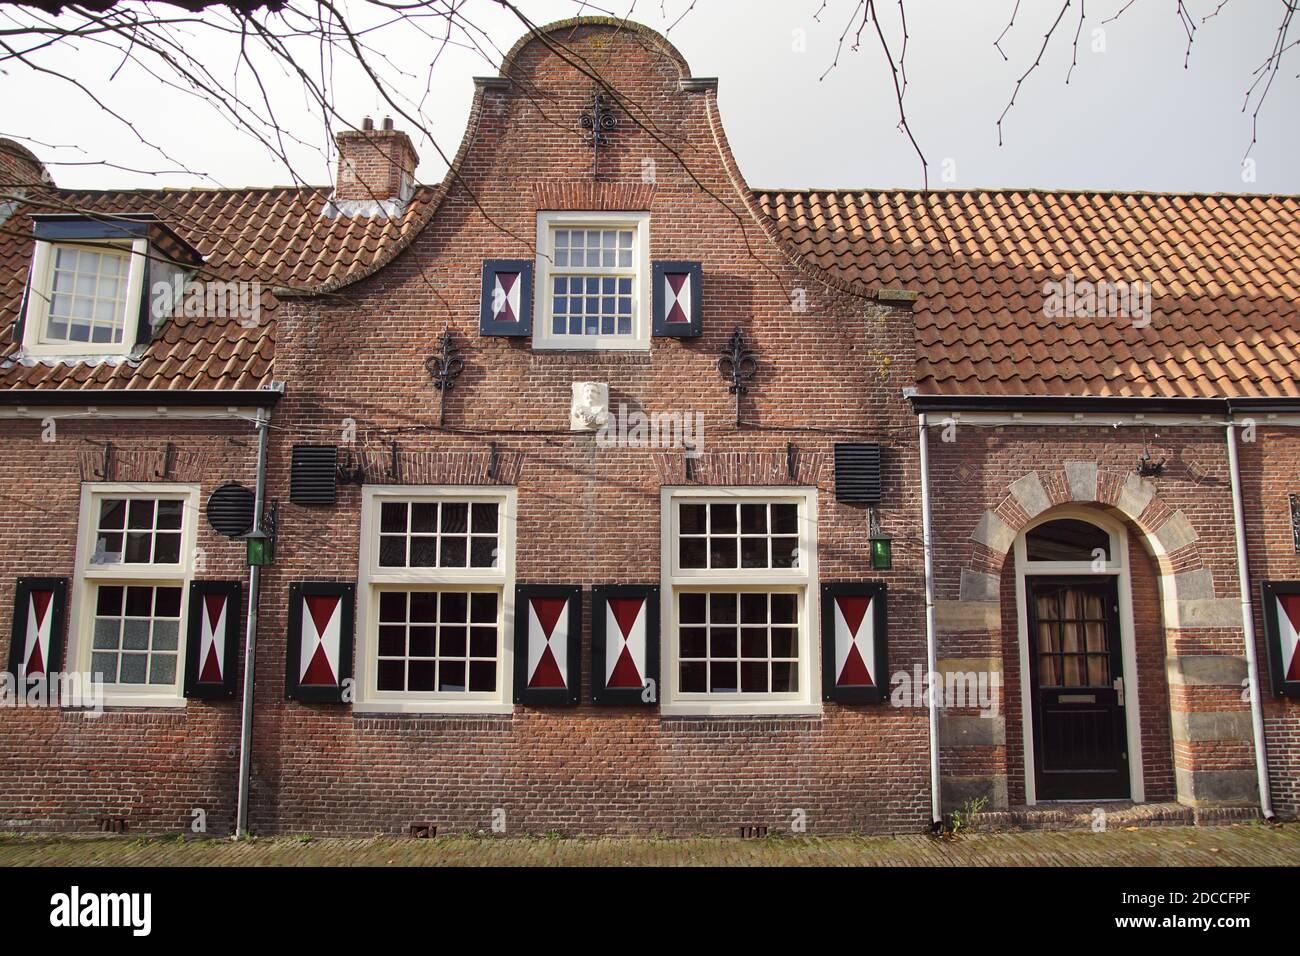 Vecchia casa, muratura, finestre a cassettoni e campanello di un edificio olandese del 1787. Persiane in legno rosso e bianco. Paesi Bassi, novembre Foto Stock